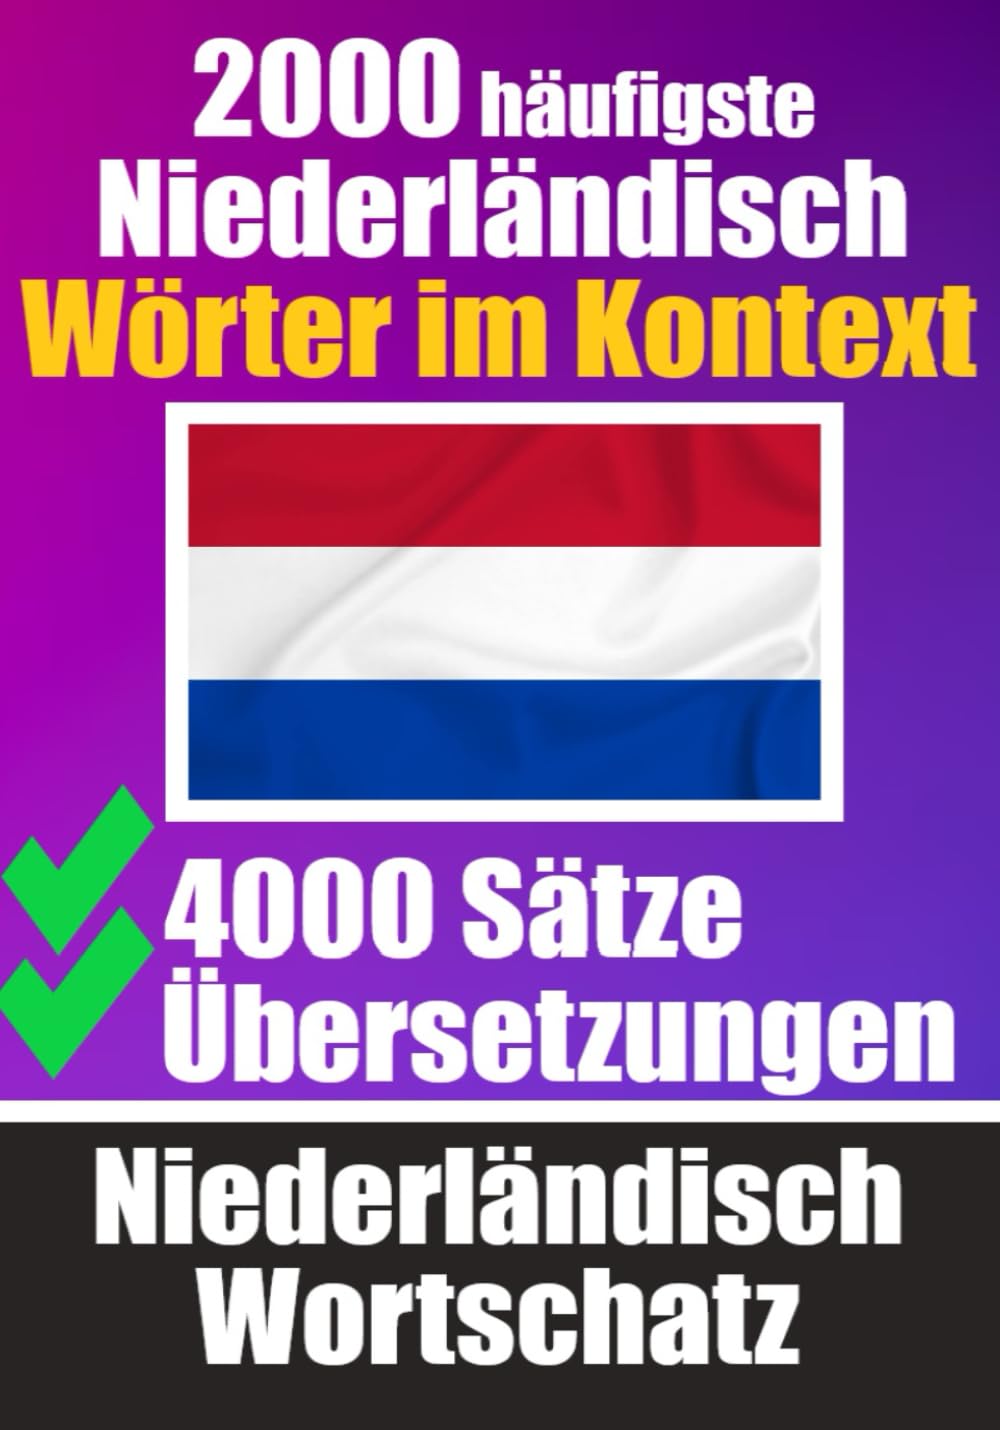 2000 Häufigste Niederländische Wörter im Kontext | 4000 Sätze mit Übersetzung